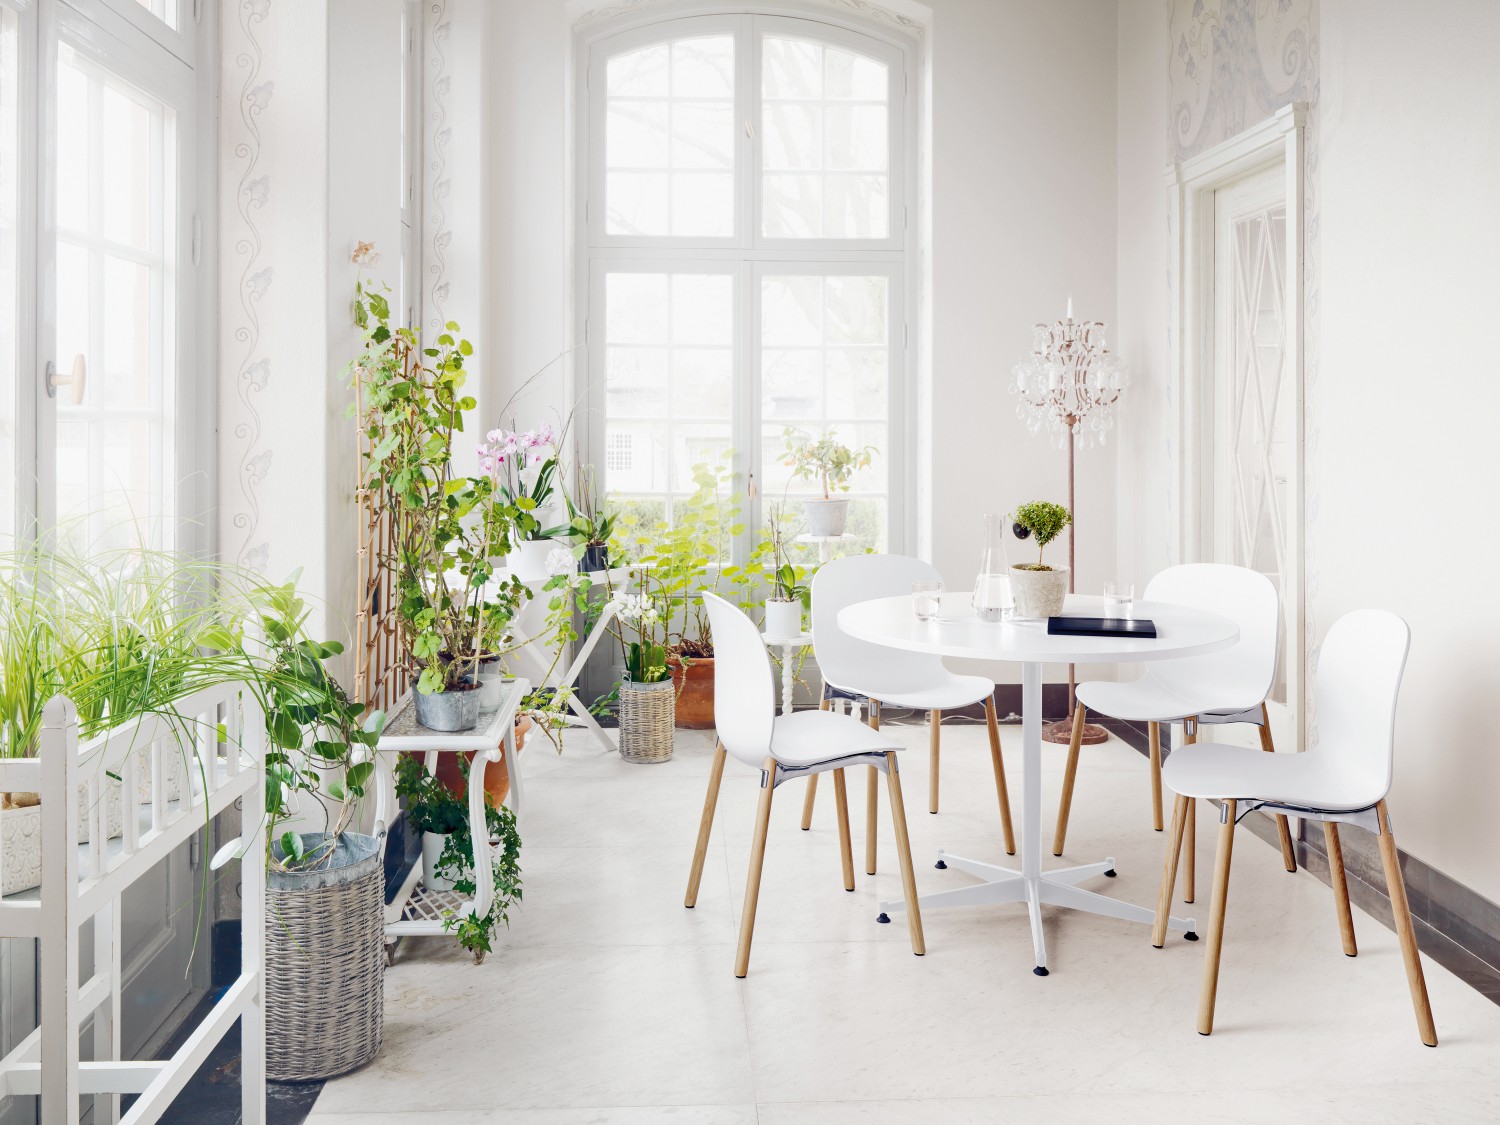 Rund ums Haus Living goes green - Mit skandinavischen Stühlen nachhaltig wohnen und gesund leben - News, Bild 1